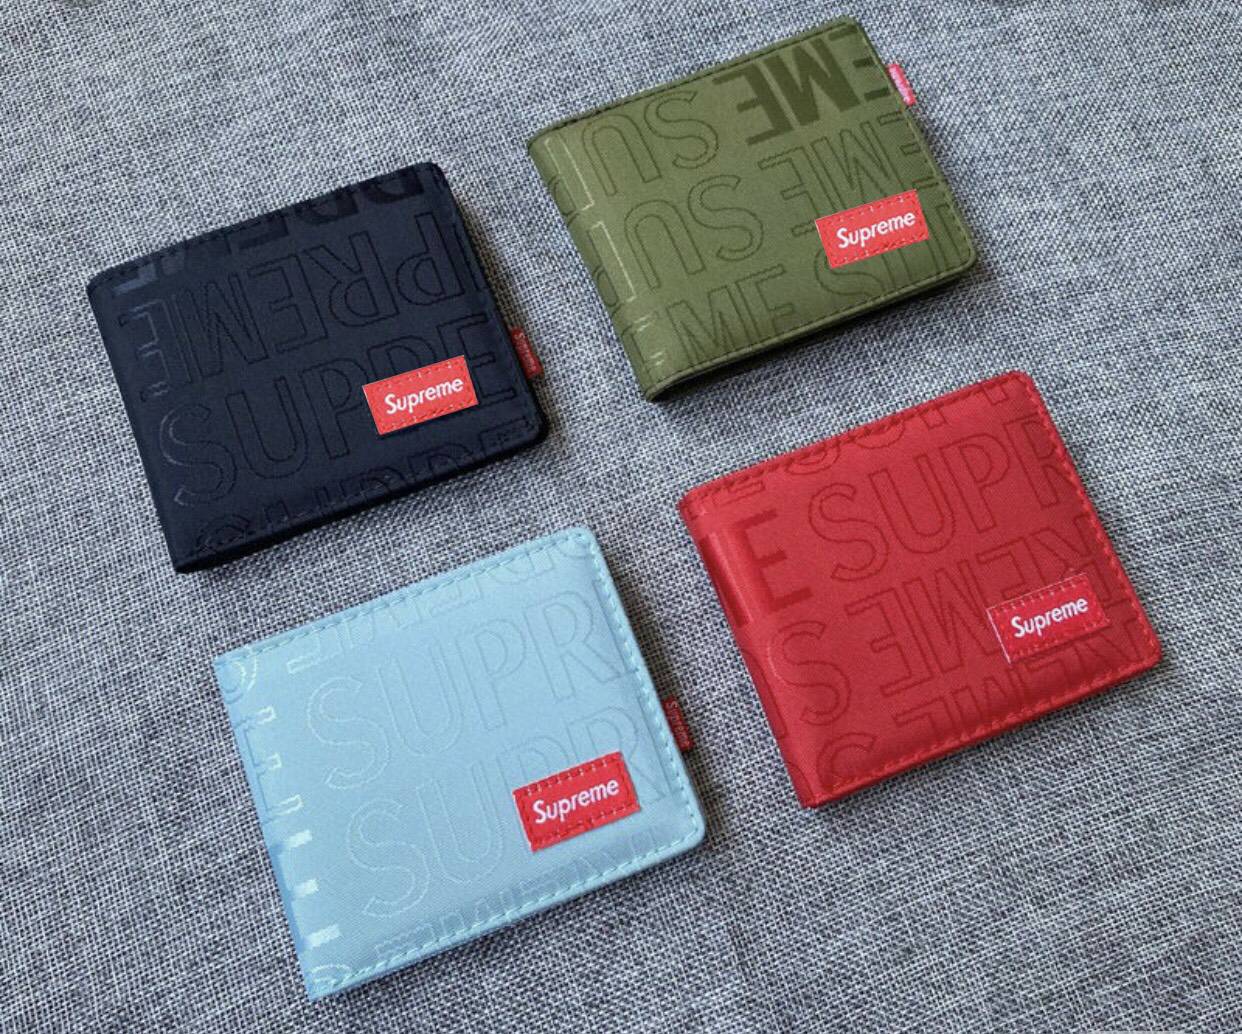 กระเป๋าสตางค์Supreme มีสี่สี สีดำ สีแดง สีเขียว สีฟ้า (พร้อมกล่อง)